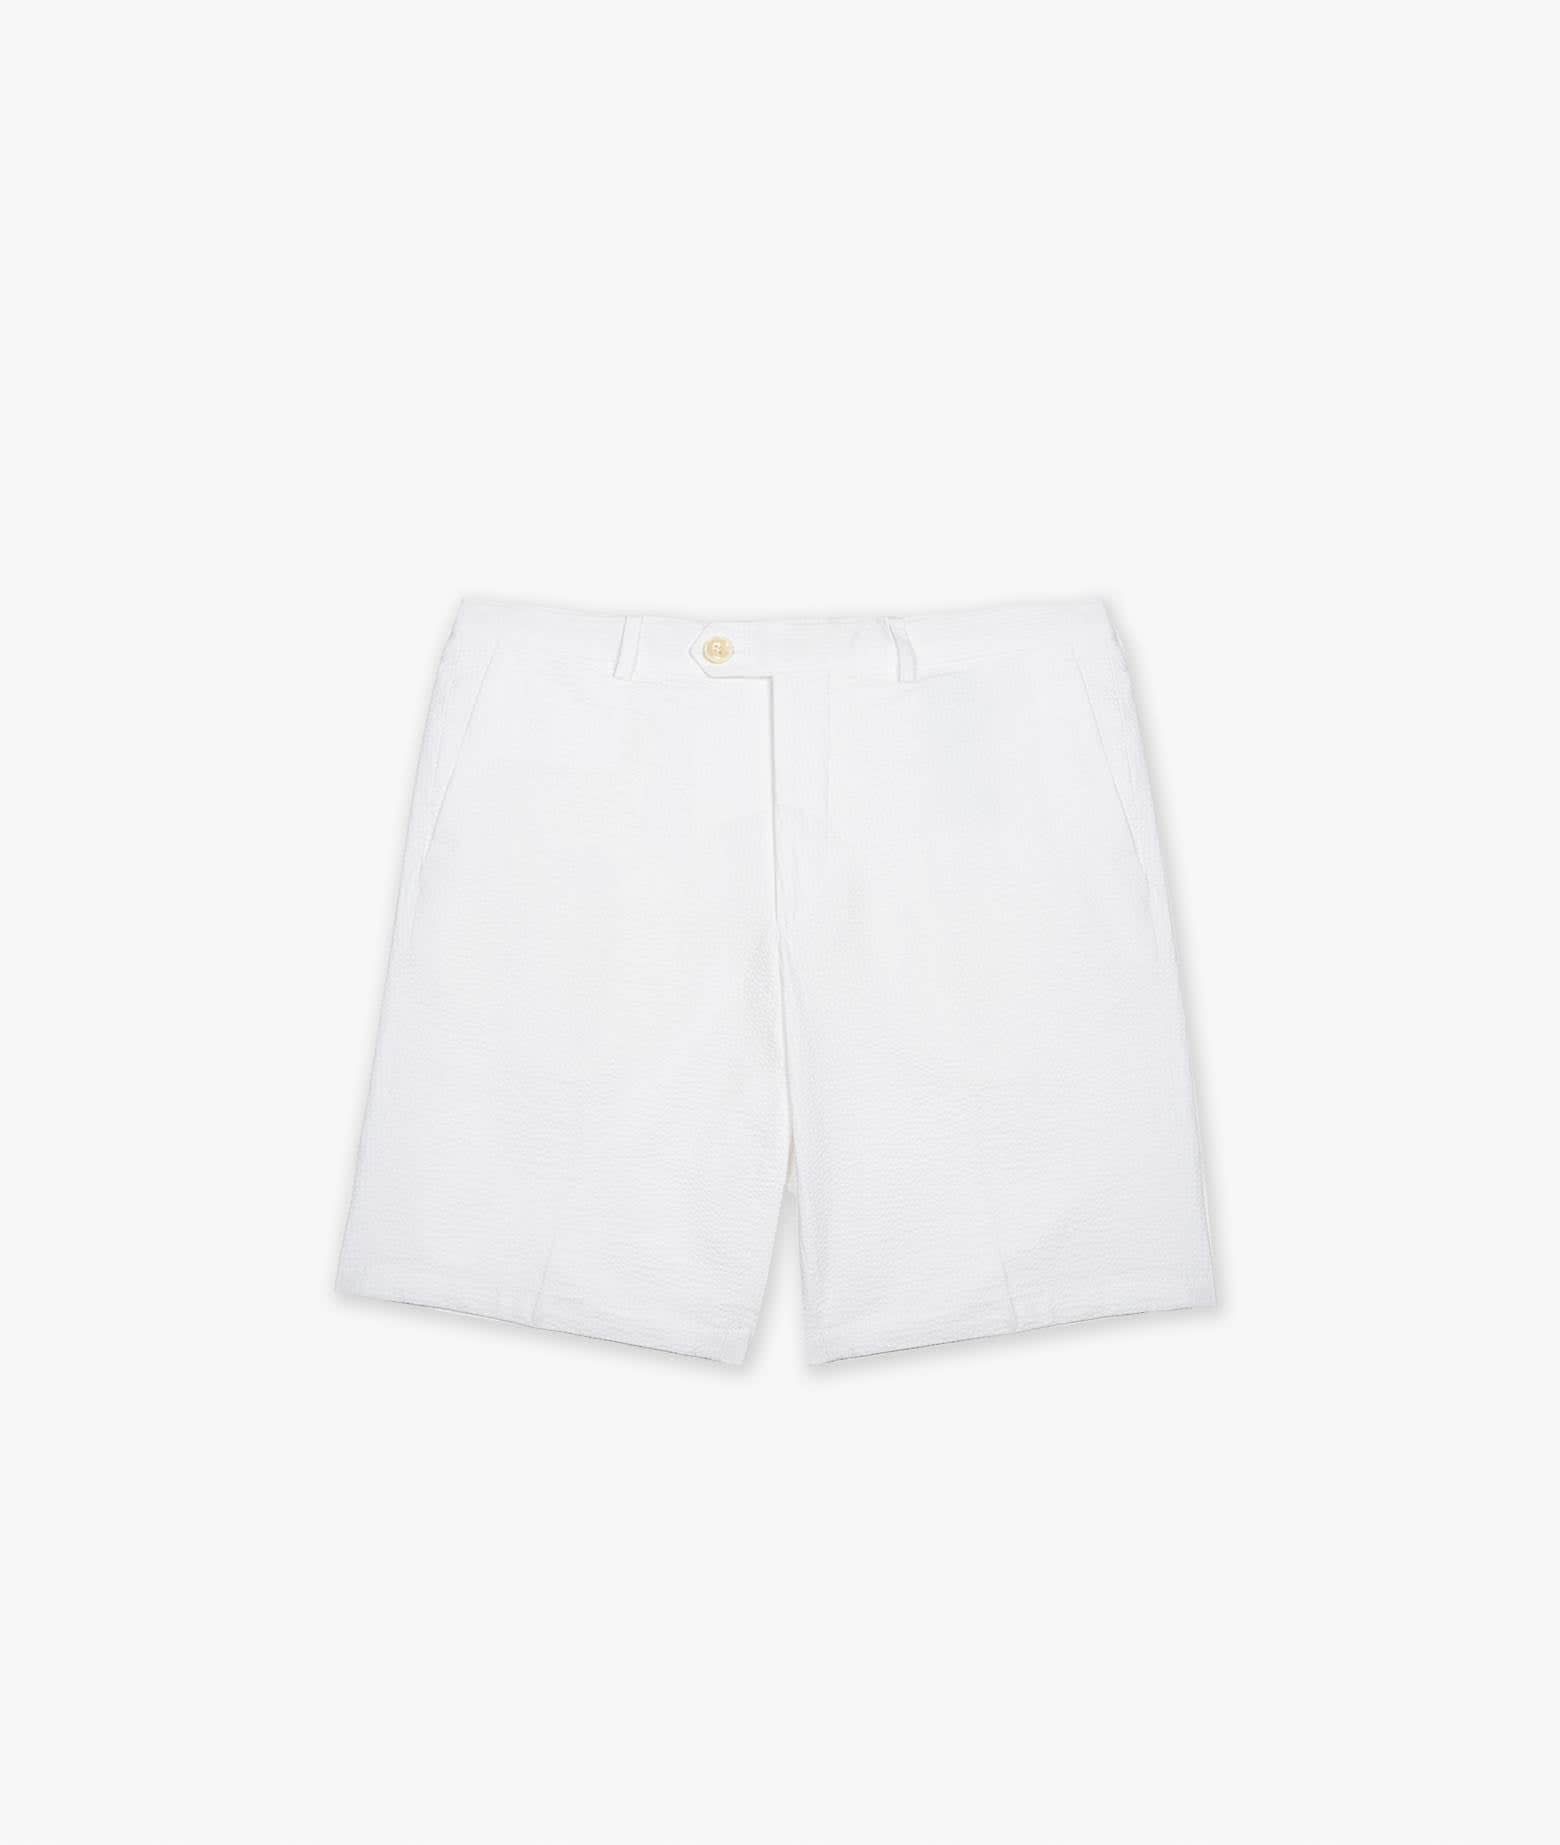 Larusmiani Bermuda Short Poltu Quatu Shorts In White